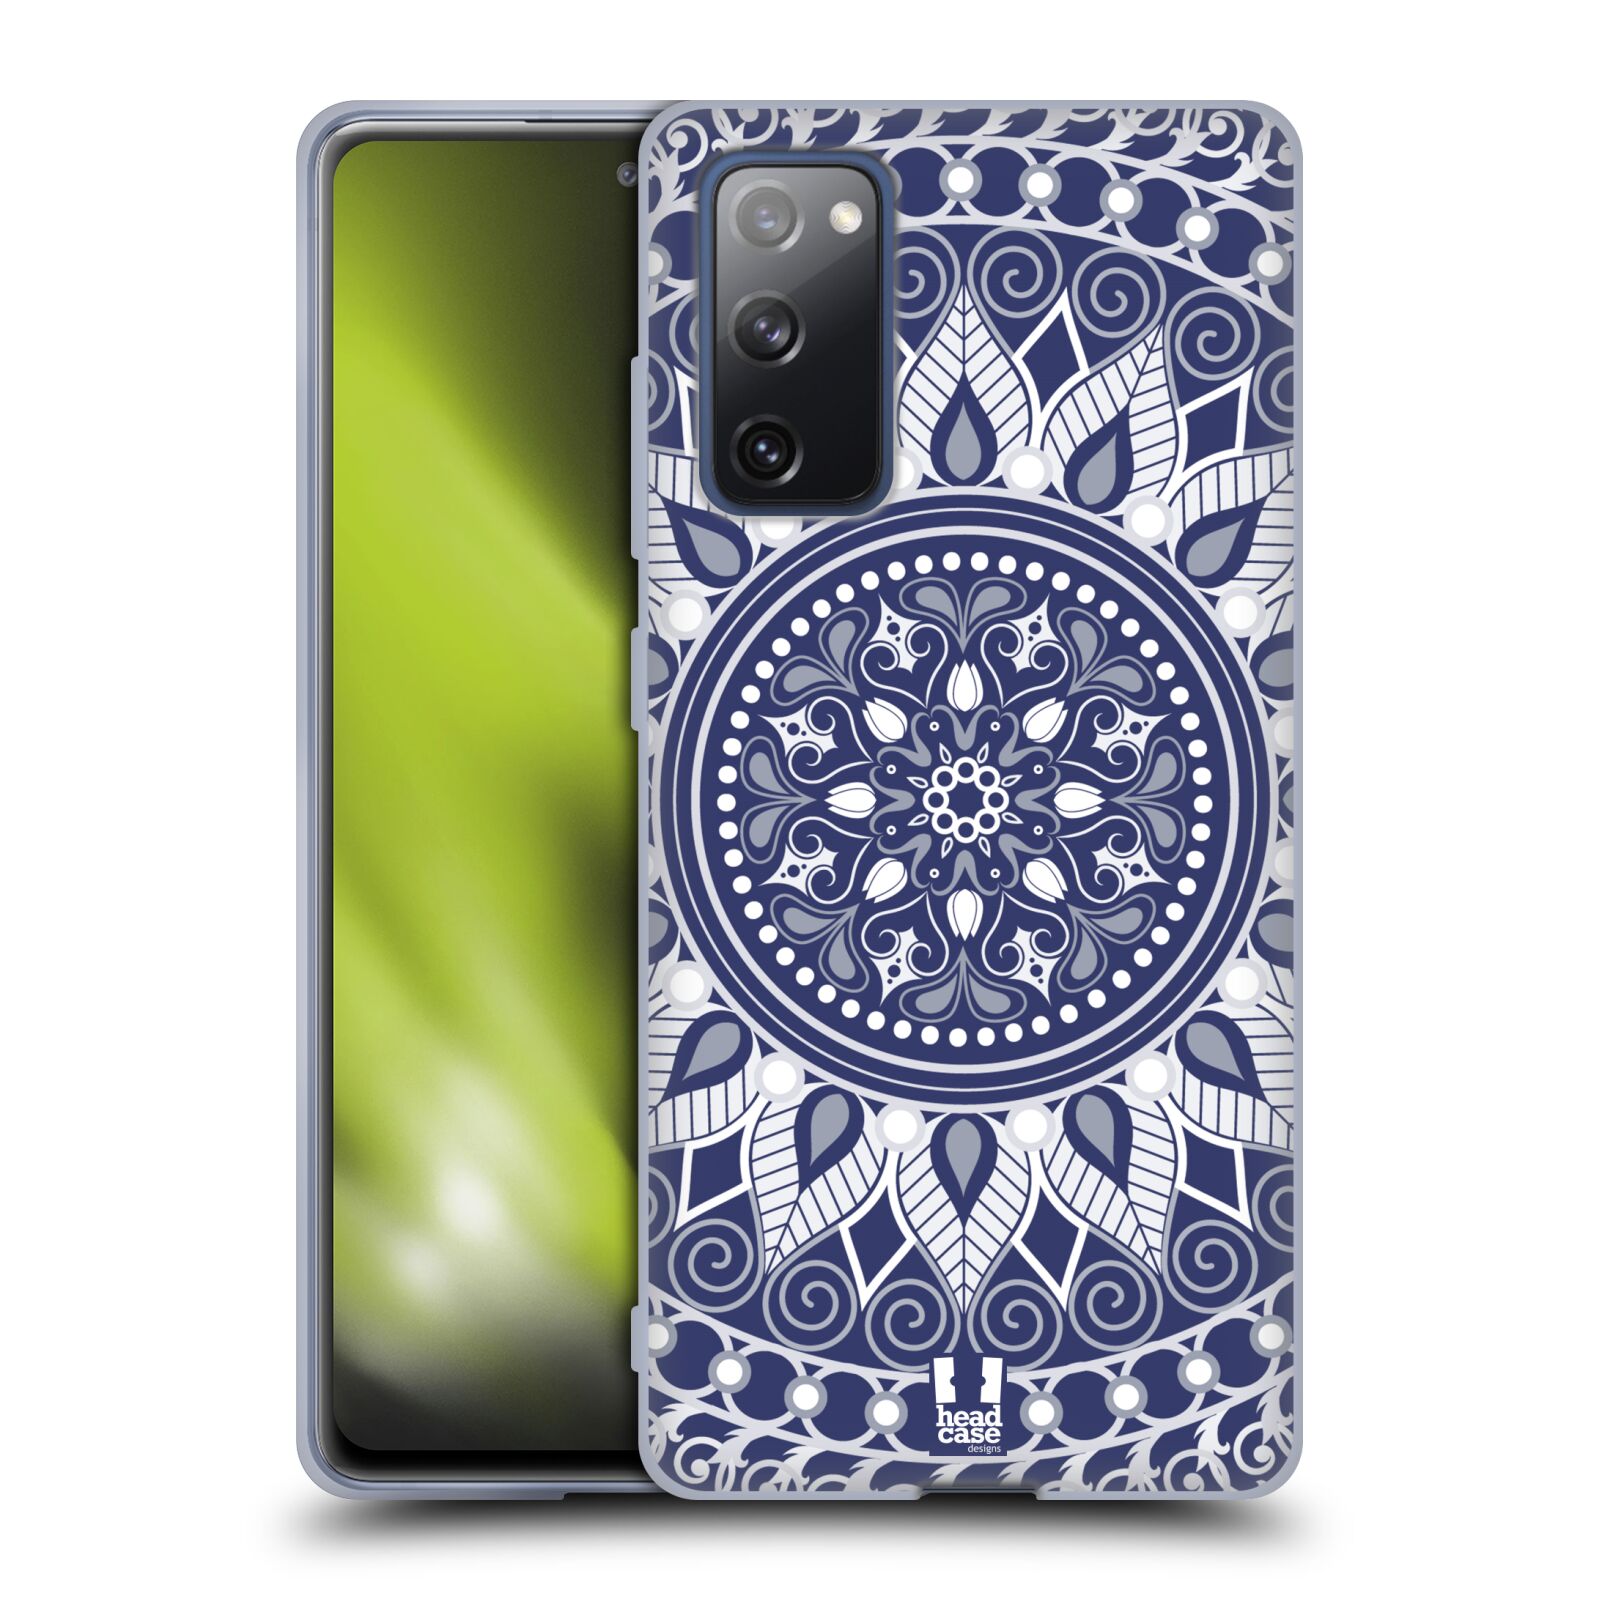 Plastový obal HEAD CASE na mobil Samsung Galaxy S20 FE / S20 FE 5G vzor Indie Mandala slunce barevný motiv MODRÁ